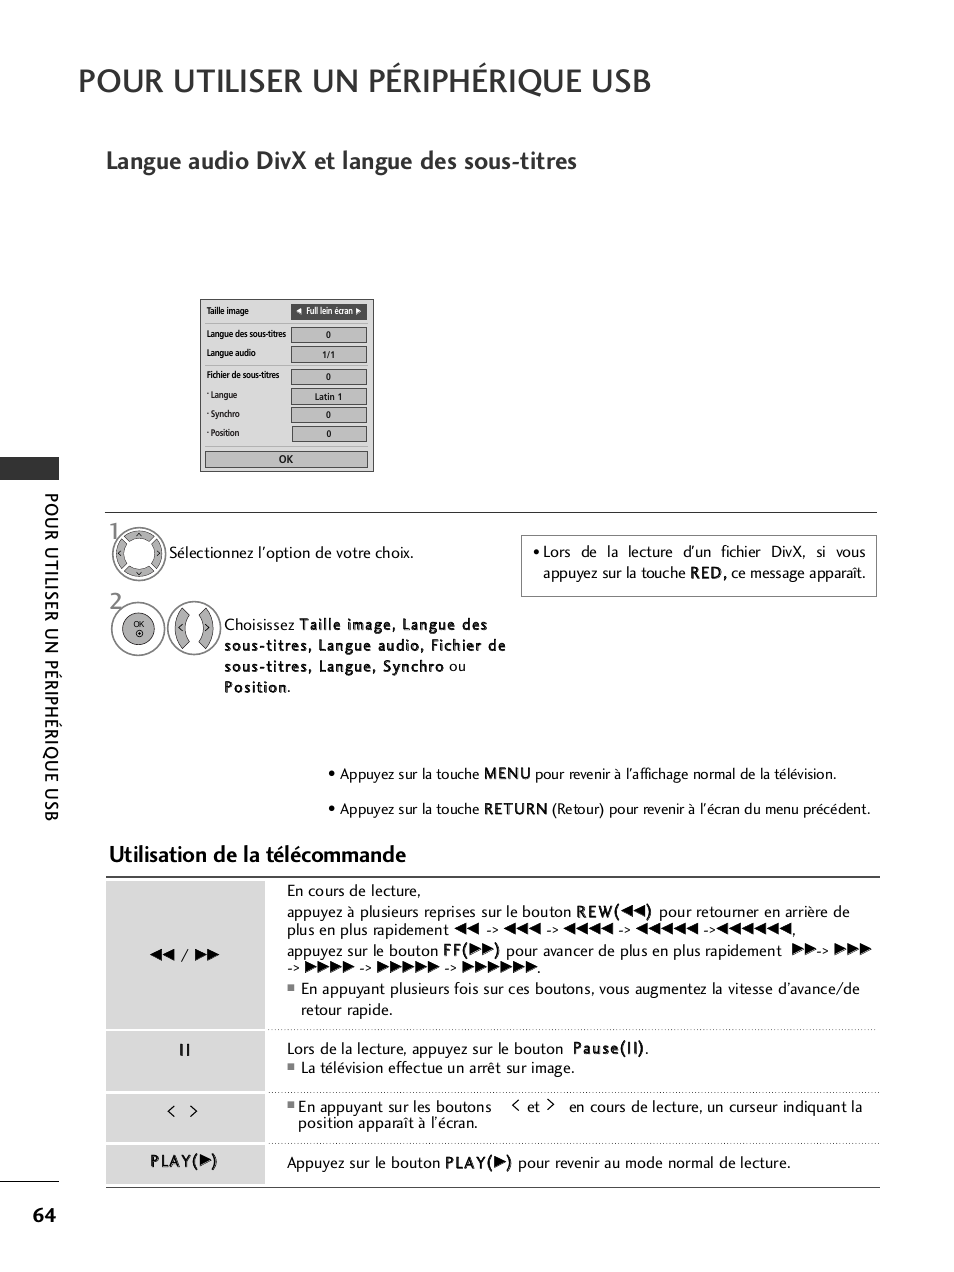 Pour utiliser un périphérique usb, Langue audio divx et langue des sous-titres, Utilisation de la télécommande | LG 50PQ6000 Manuel d'utilisation | Page 66 / 124